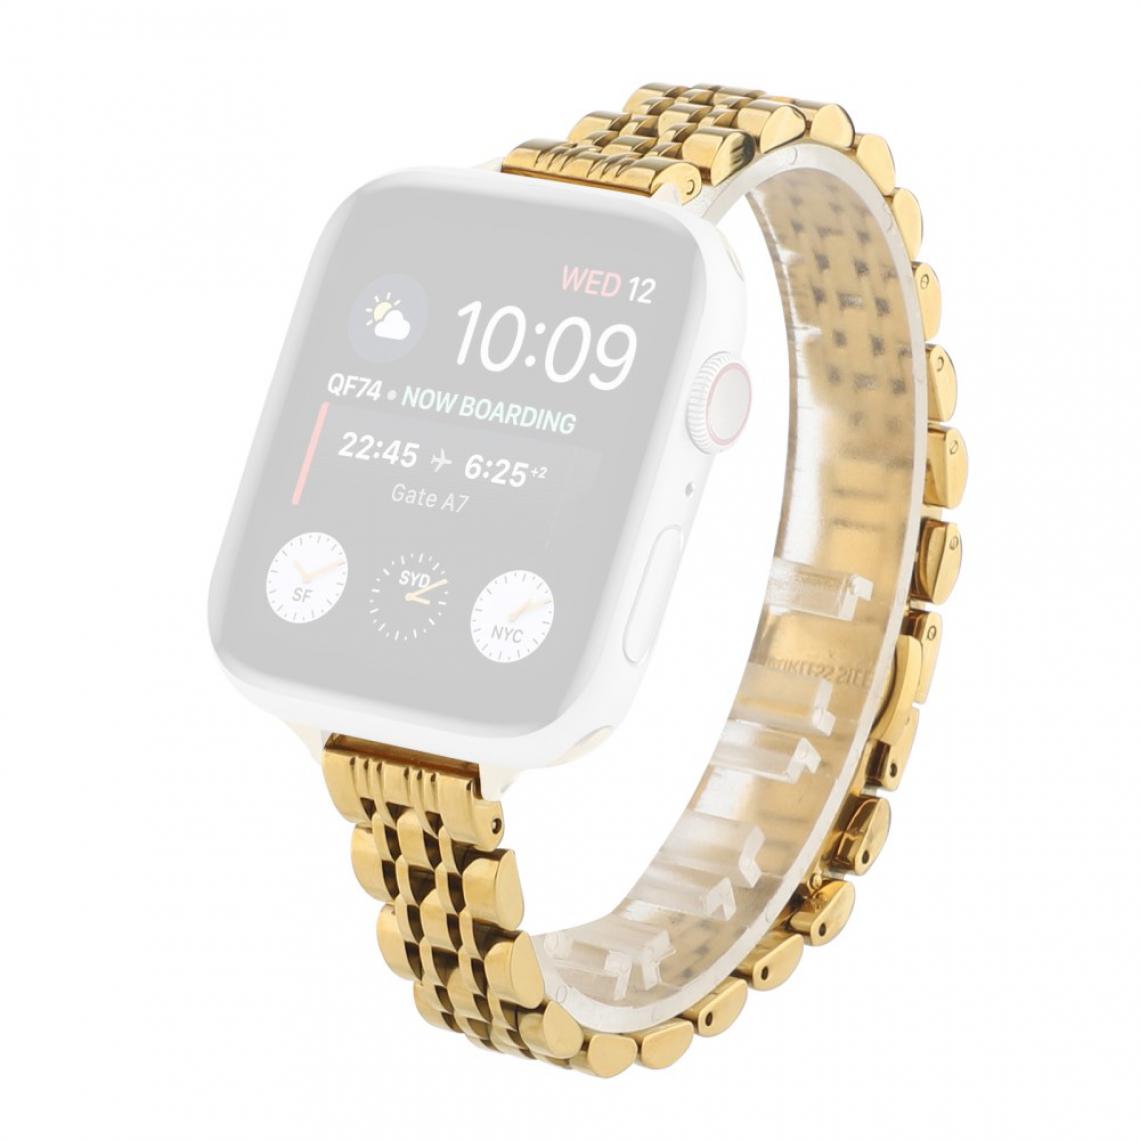 Other - Bracelet en métal or pour votre Apple Watch Series 6/SE/5/4 40mm/Series 3/2/1 38mm - Accessoires bracelet connecté